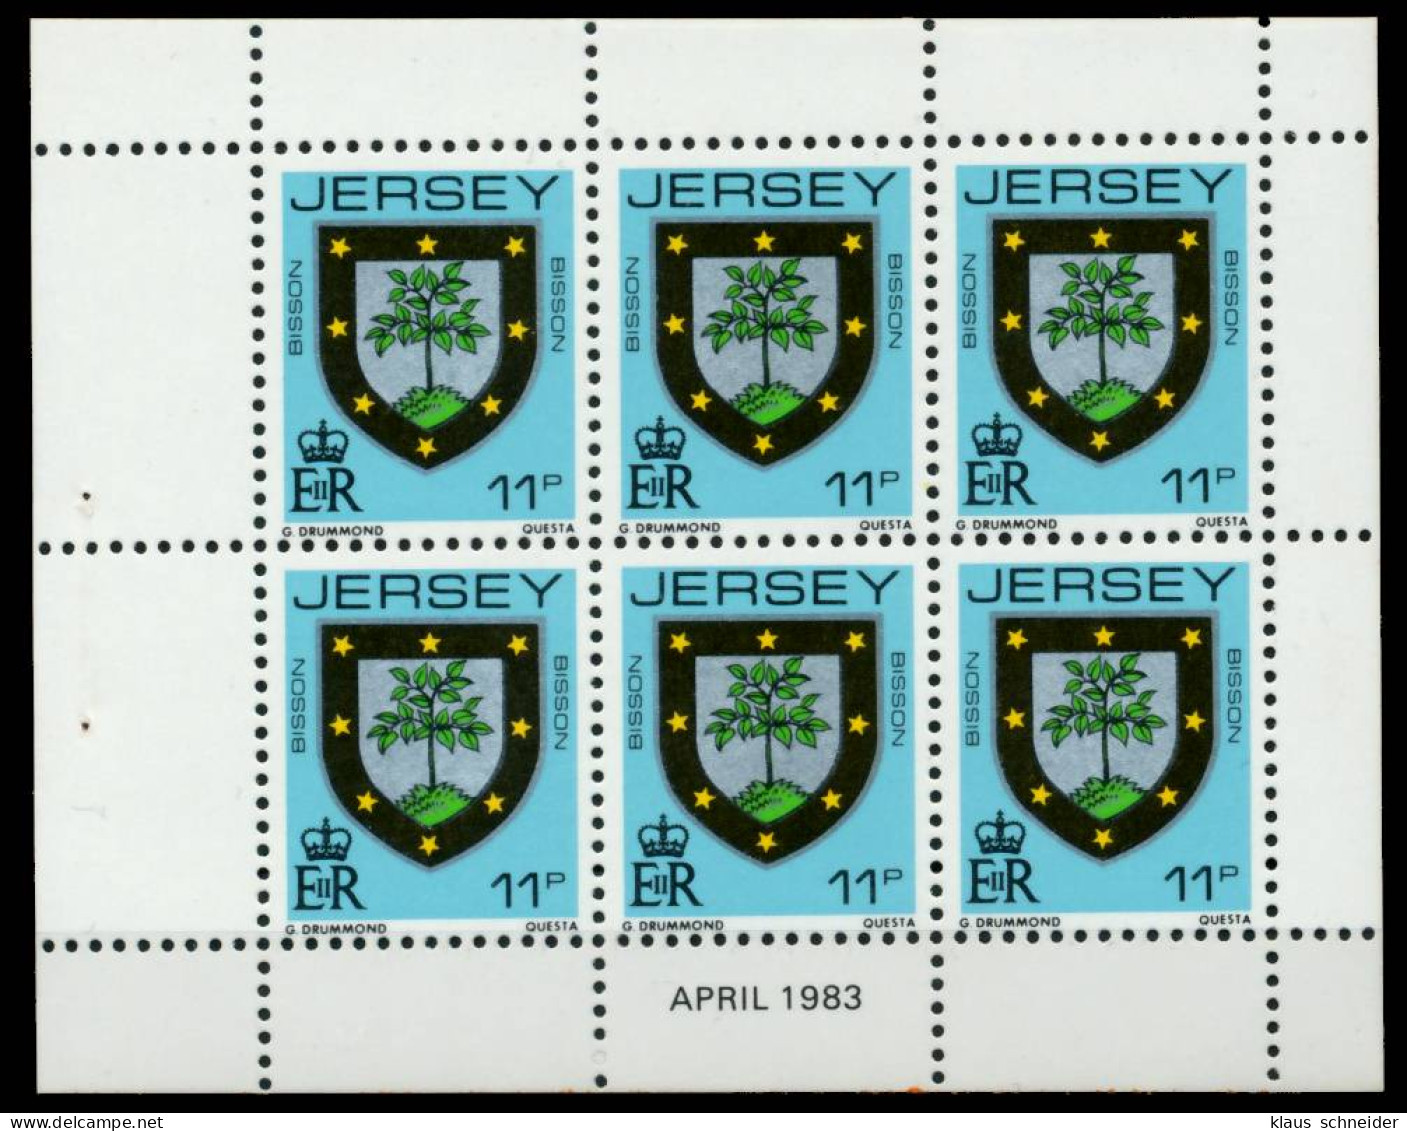 JERSEY HEFTCHENBLATT Nr HB 0-31 APR83 Postfrisch X6BE6F6 - Jersey